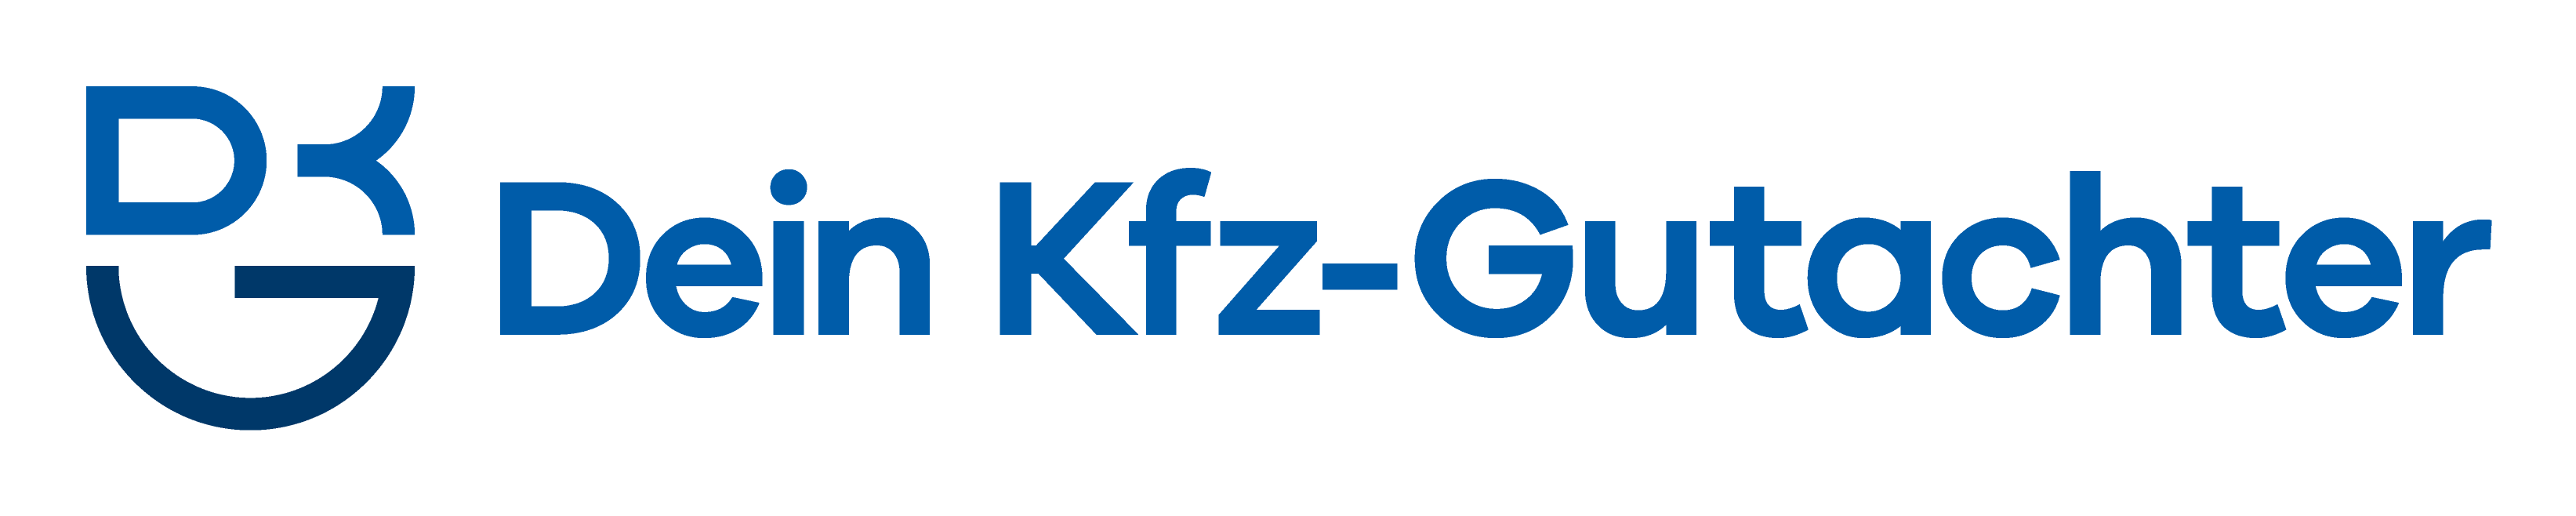 Dkg-Logo@2